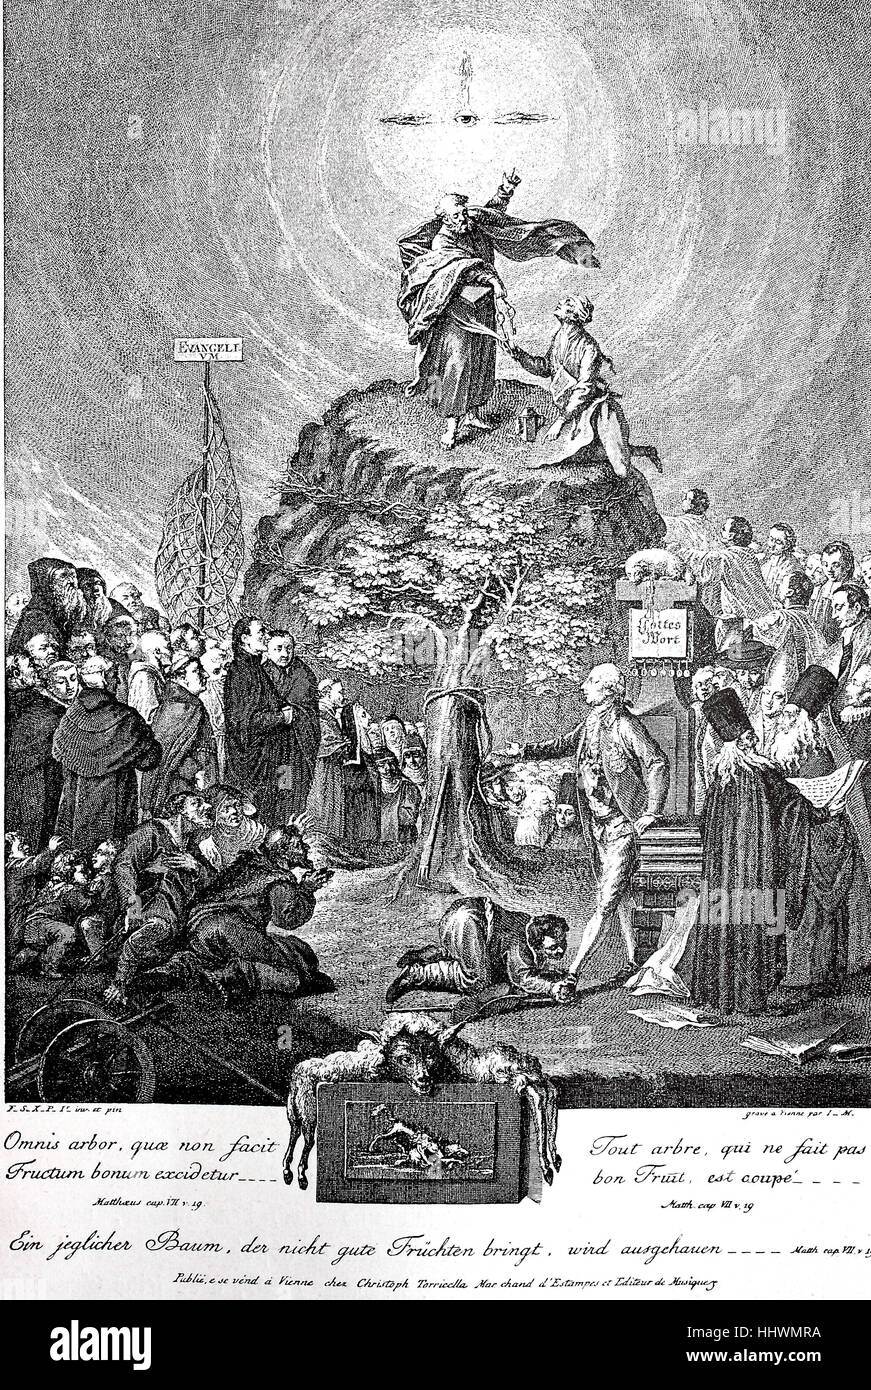 Allegorie auf die Abschaffung der Klöster von Joseph II., Faksimile, Österreich, Geschichtsbild oder Illustration, veröffentlicht 1890, digital verbessert Stockfoto